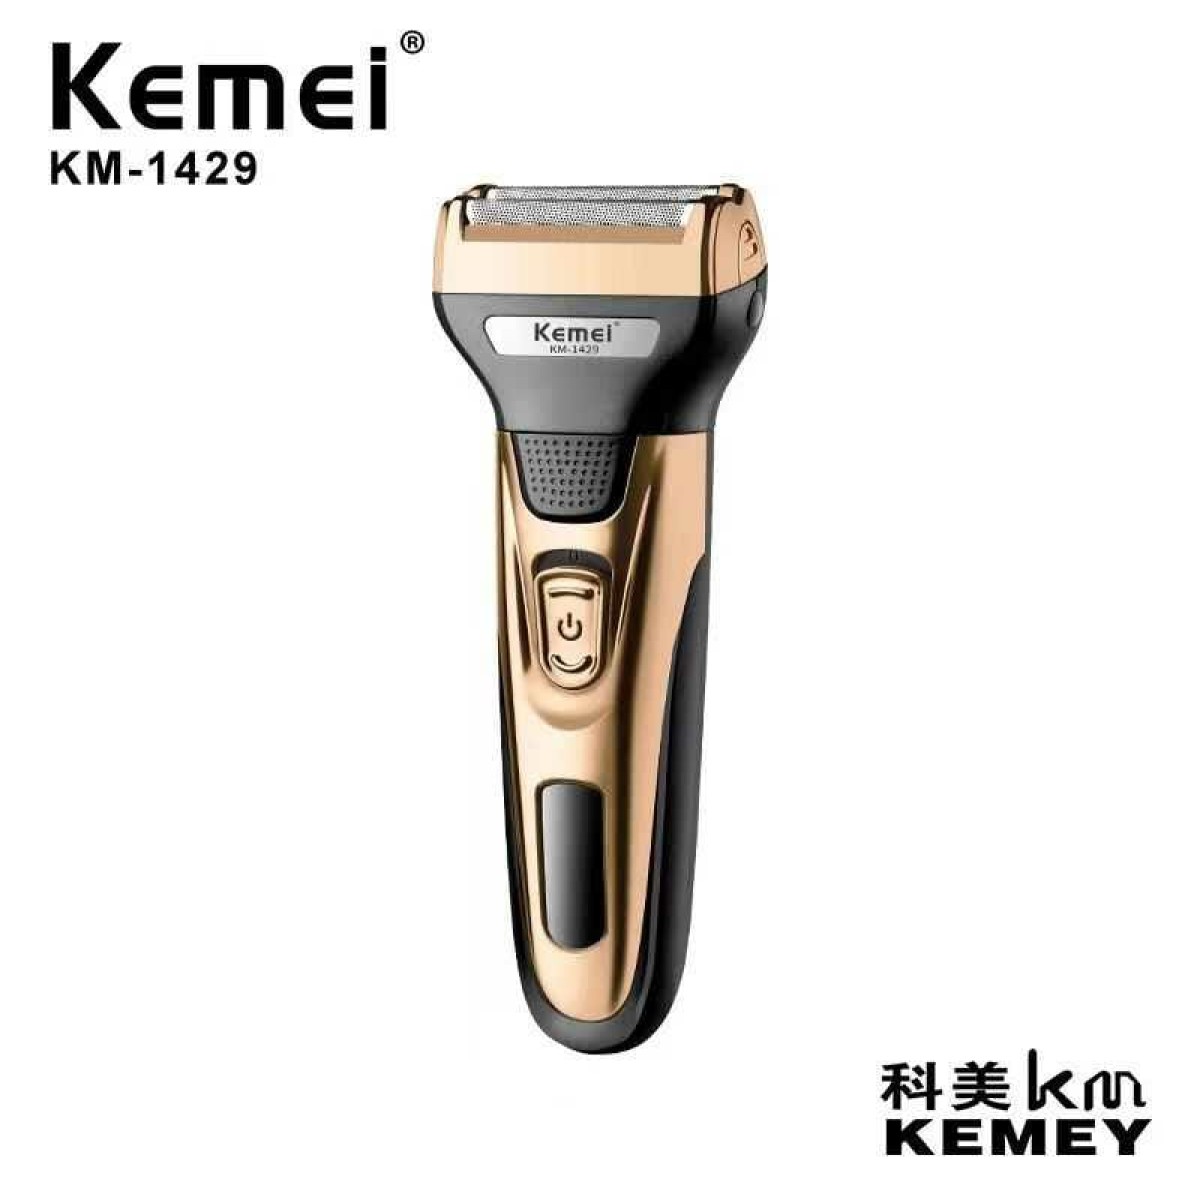 Ξυριστική μηχανή - KM-1429 - Kemei